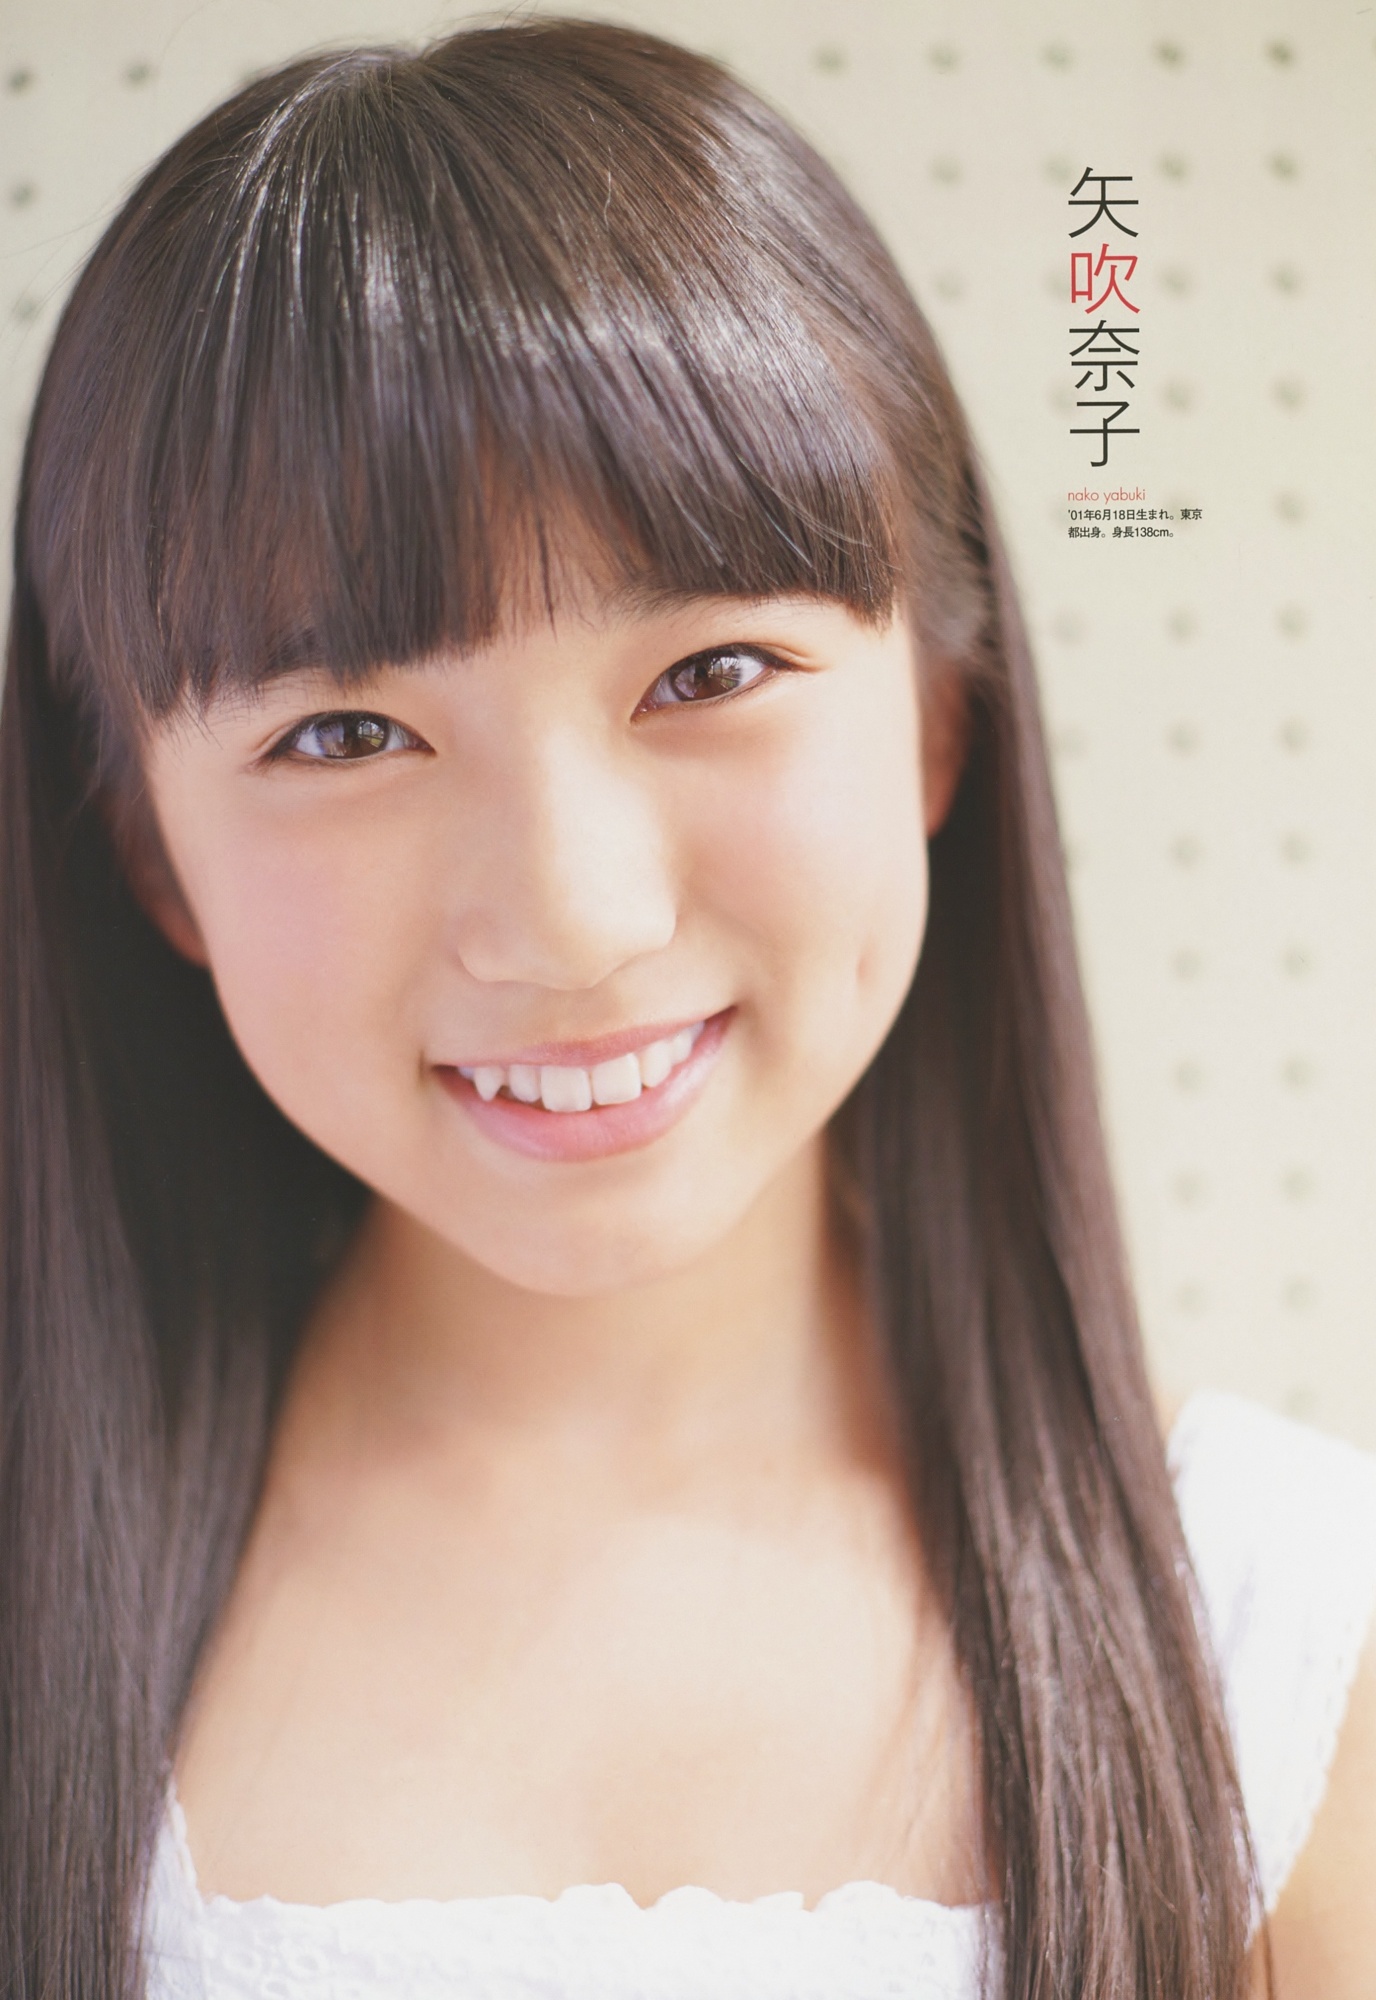 Yabuki Nako Hkt48 Asiachan Kpop Image Board